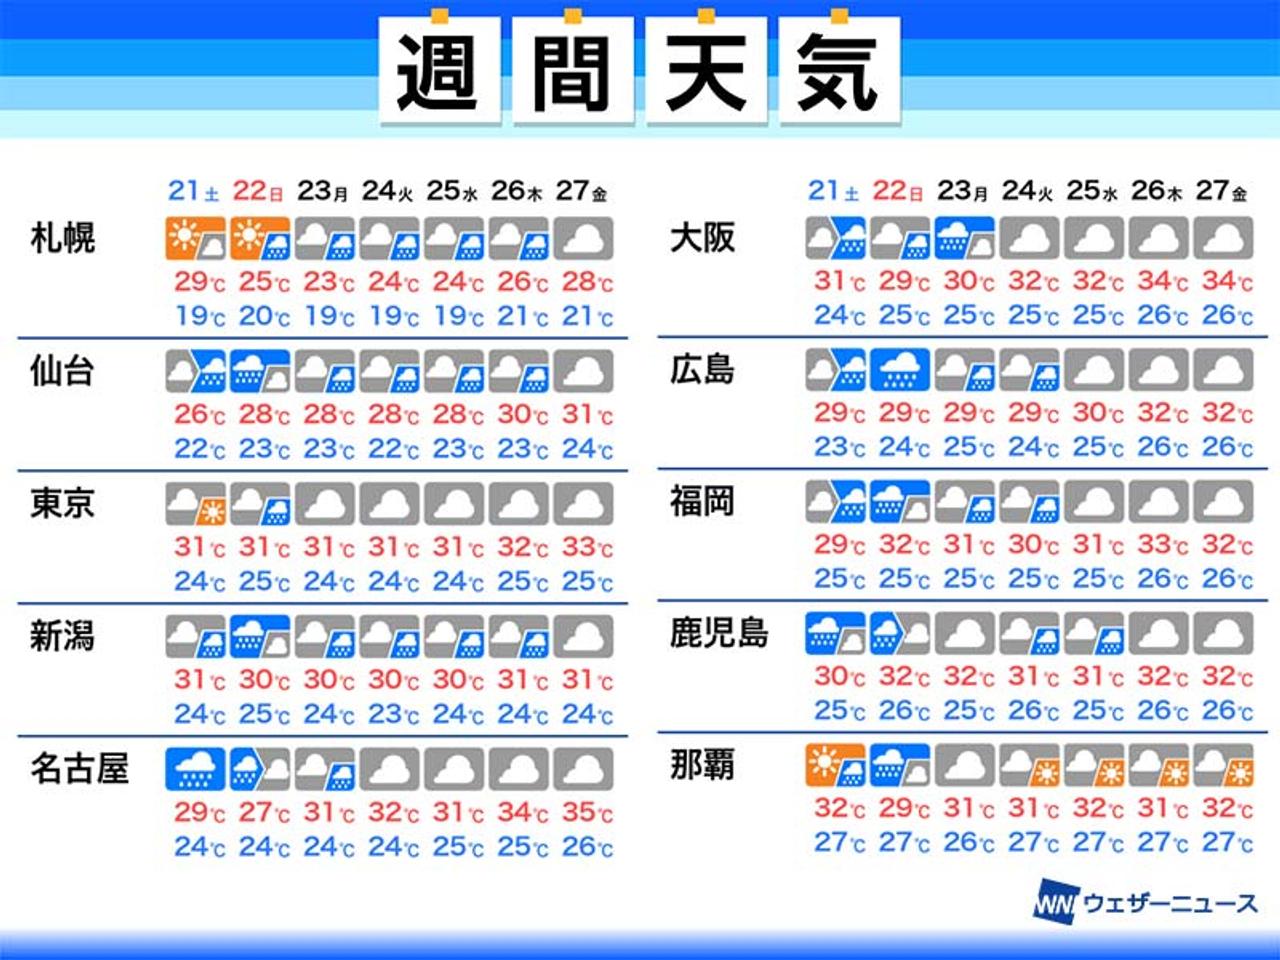 来週も前線の動向注意 沖縄には熱帯低気圧接近 週間天気 8 21 8 27 Business Insider Japan